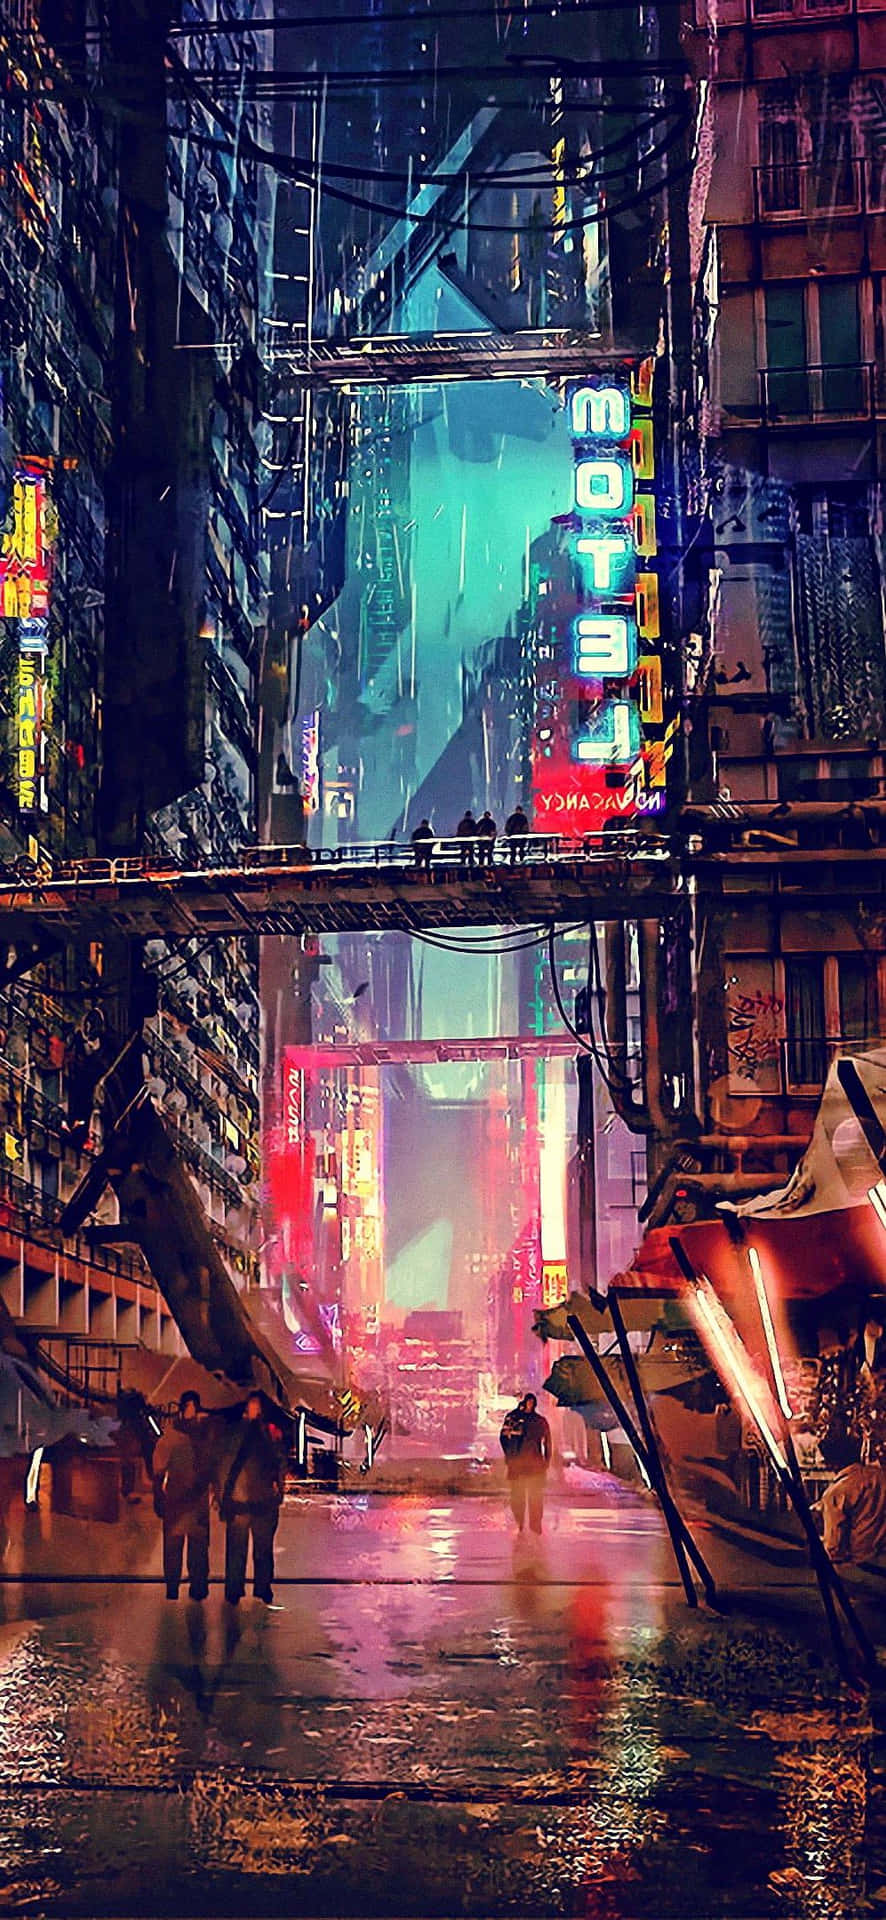 Willkommenin Cyberpunk City, Einer Stadt Mit Hoch Aufragenden Wolkenkratzern Und Neonbeleuchteten Straßen.